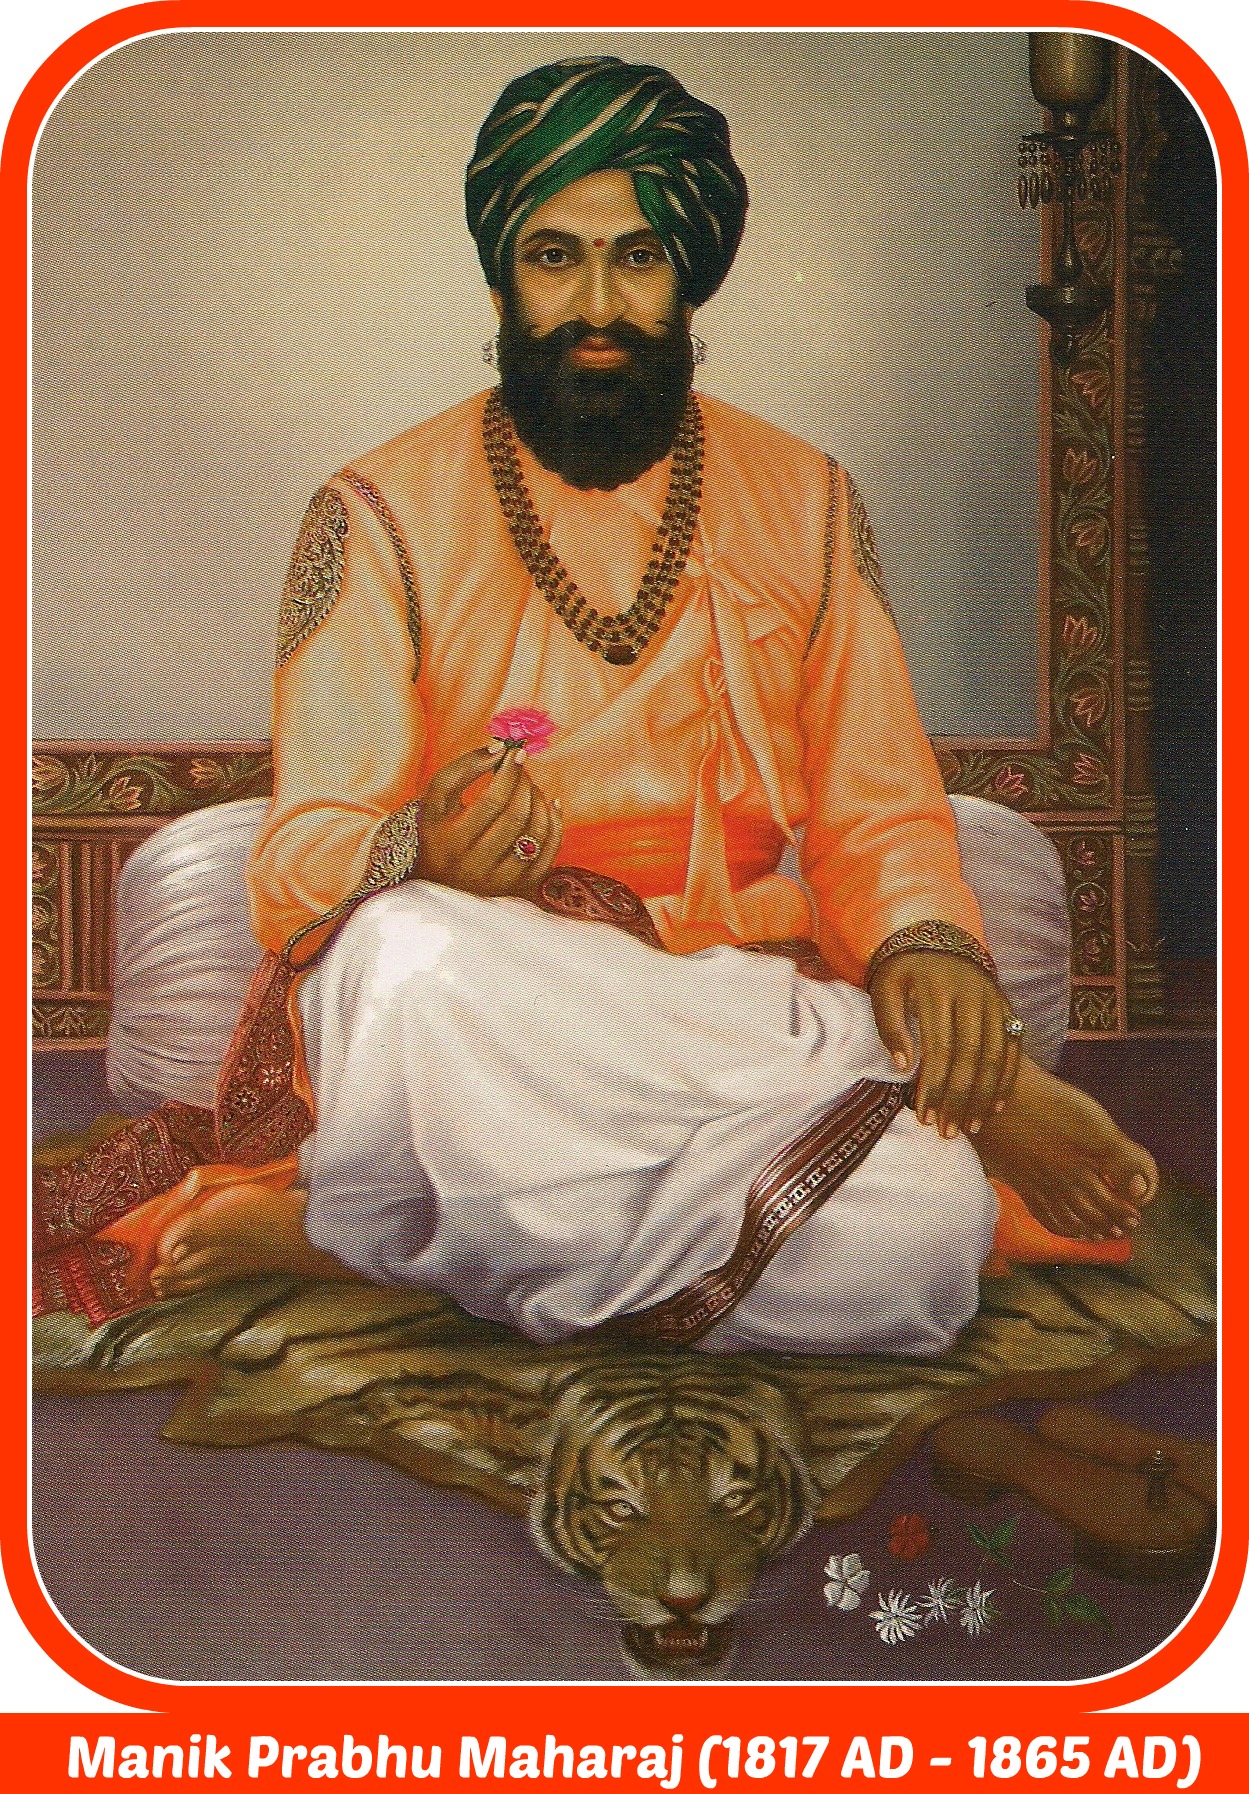 Sri Manik Prabbhu Maharaj